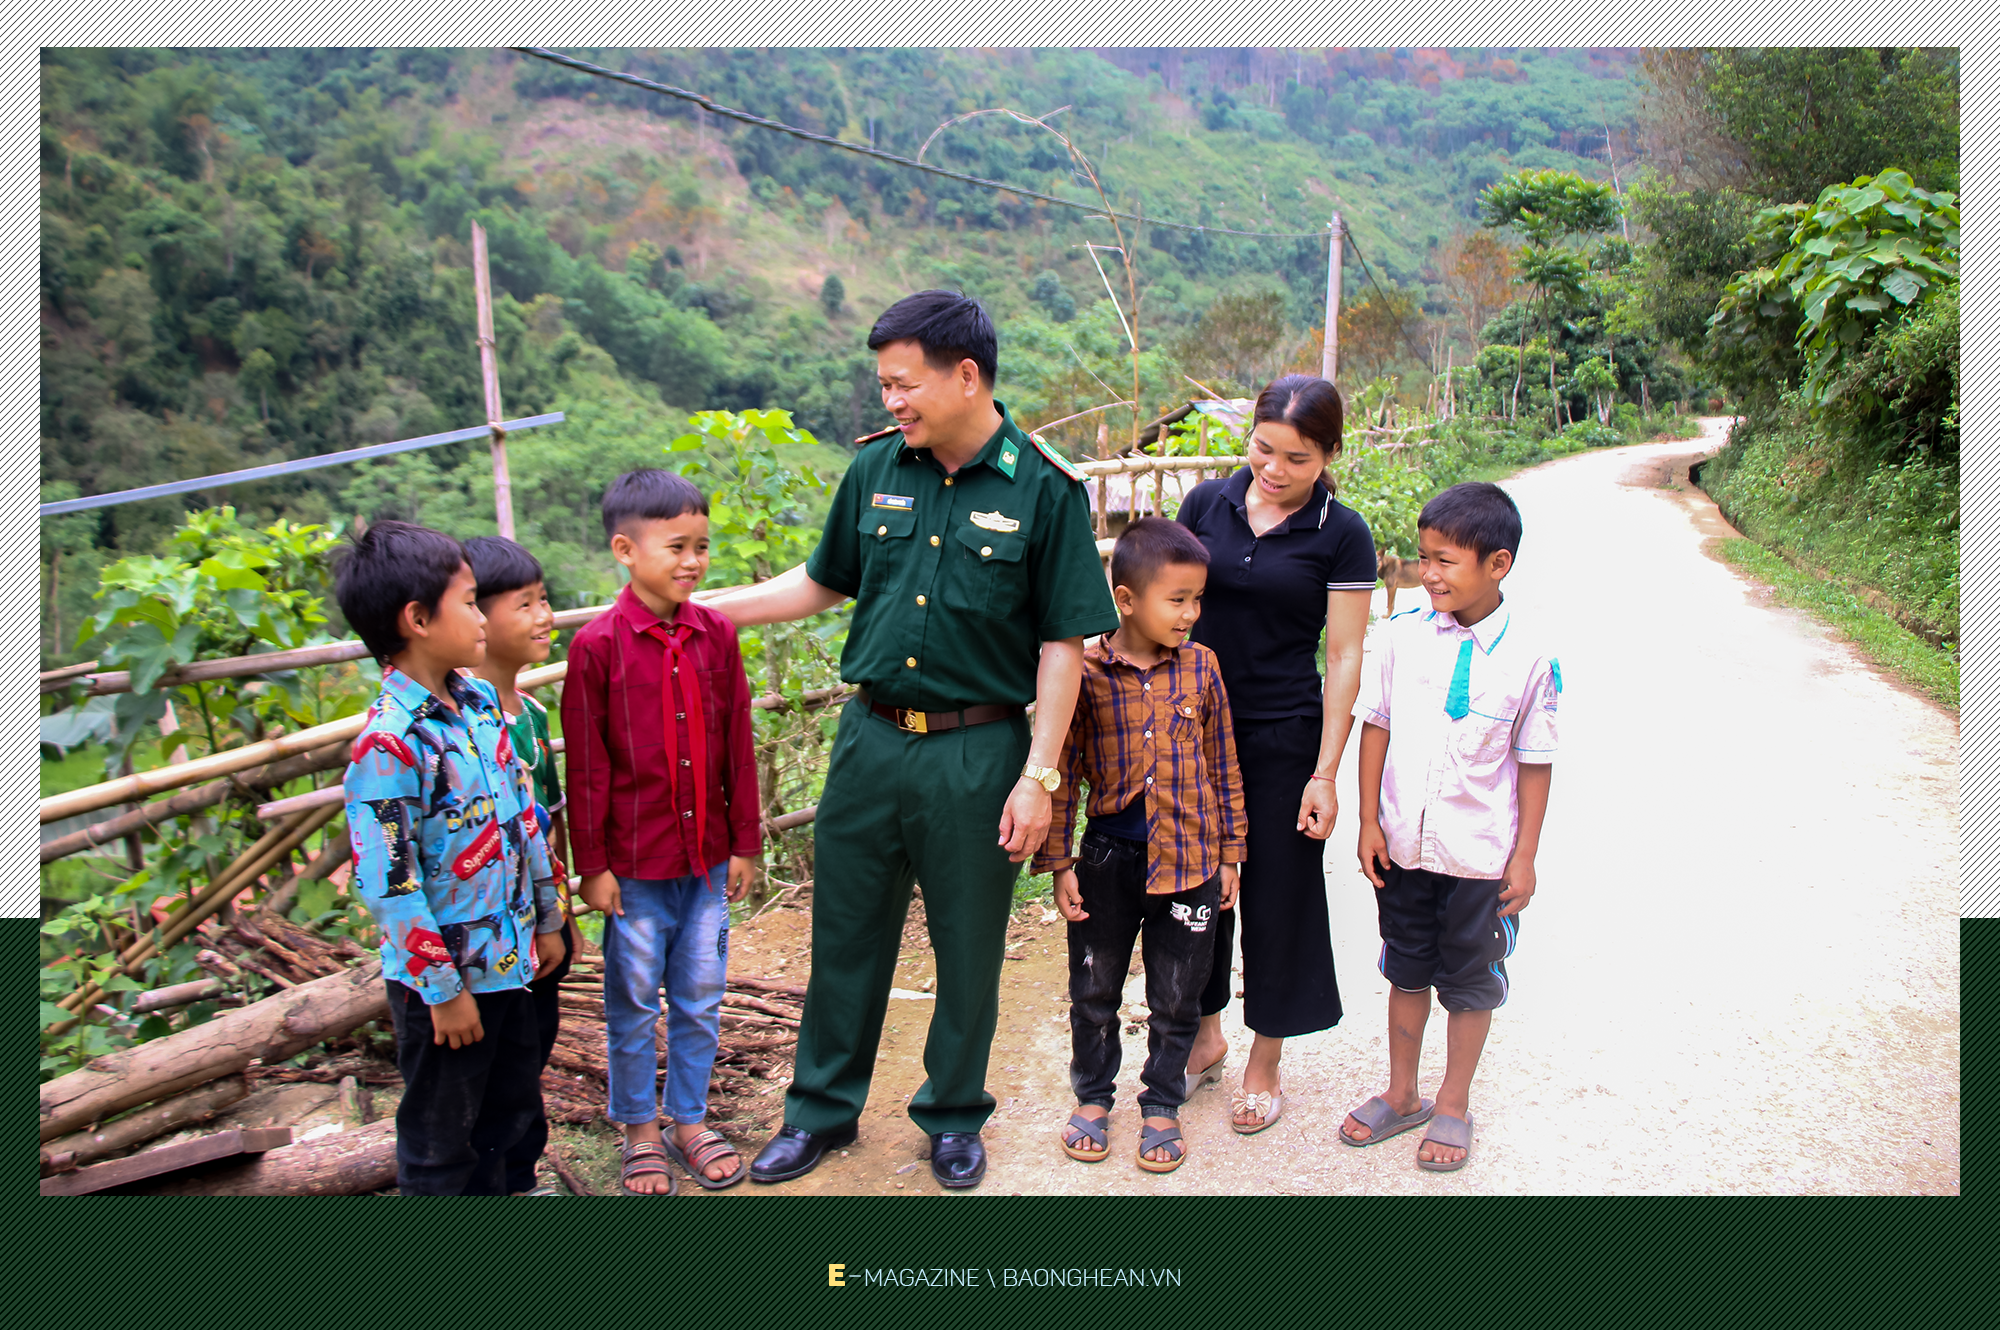 Thiếu tá Hồ Xuân Tuyến trò chuyện với người dân và các cháu nhỏ ở bản Tùng Hương, xã Tam Quang.